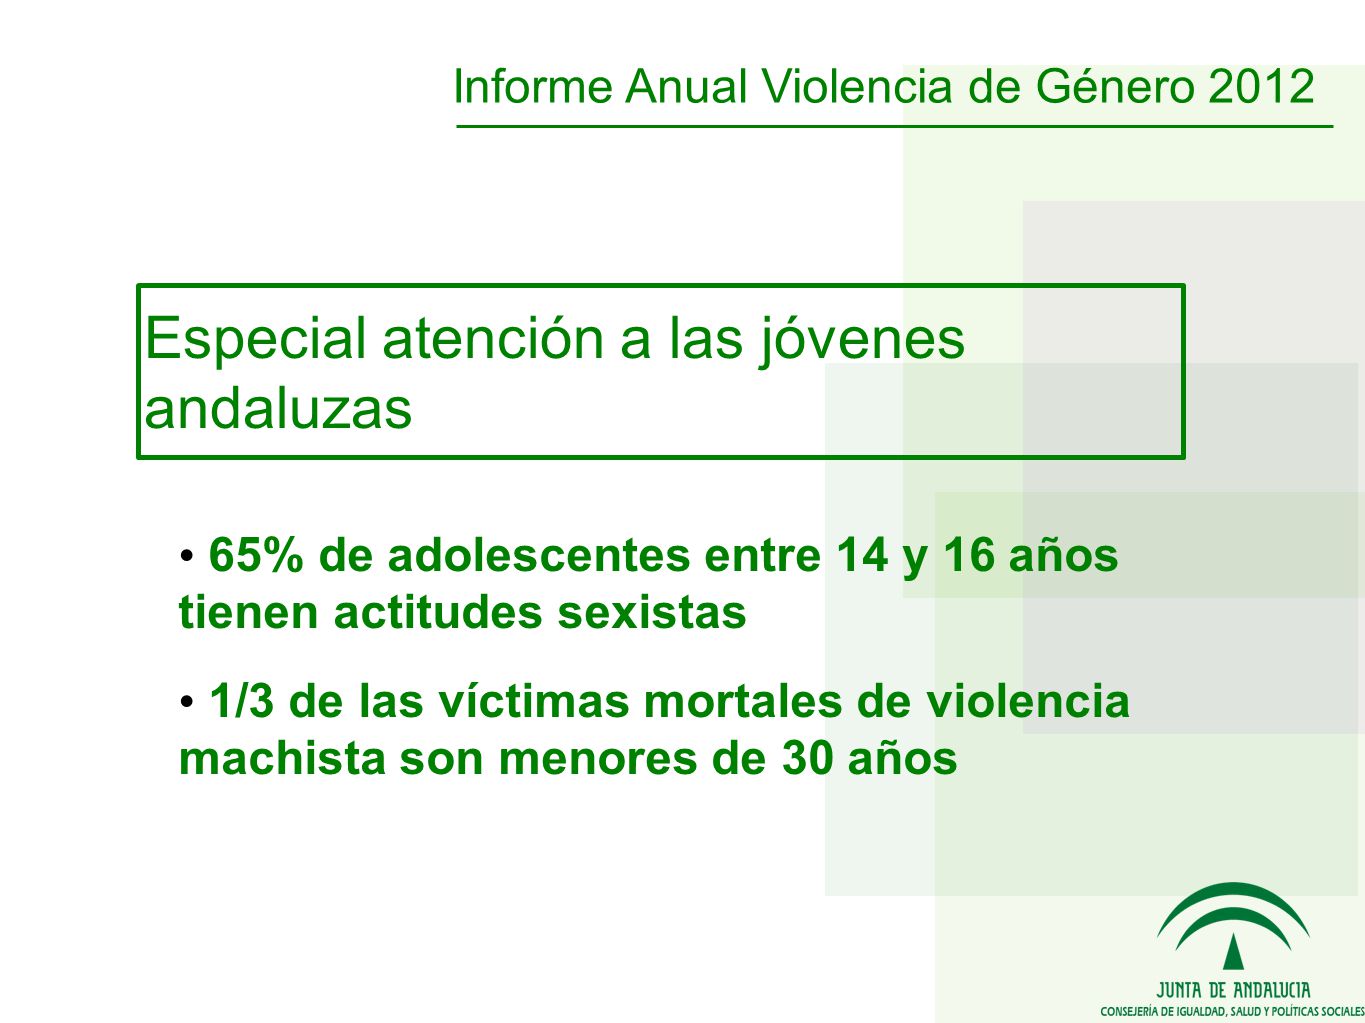 Especial atención a las jóvenes andaluzas 65% de adolescentes entre 14 y 16 años tienen actitudes sexistas 1/3 de las víctimas mortales de violencia machista son menores de 30 años Informe Anual Violencia de Género 2012